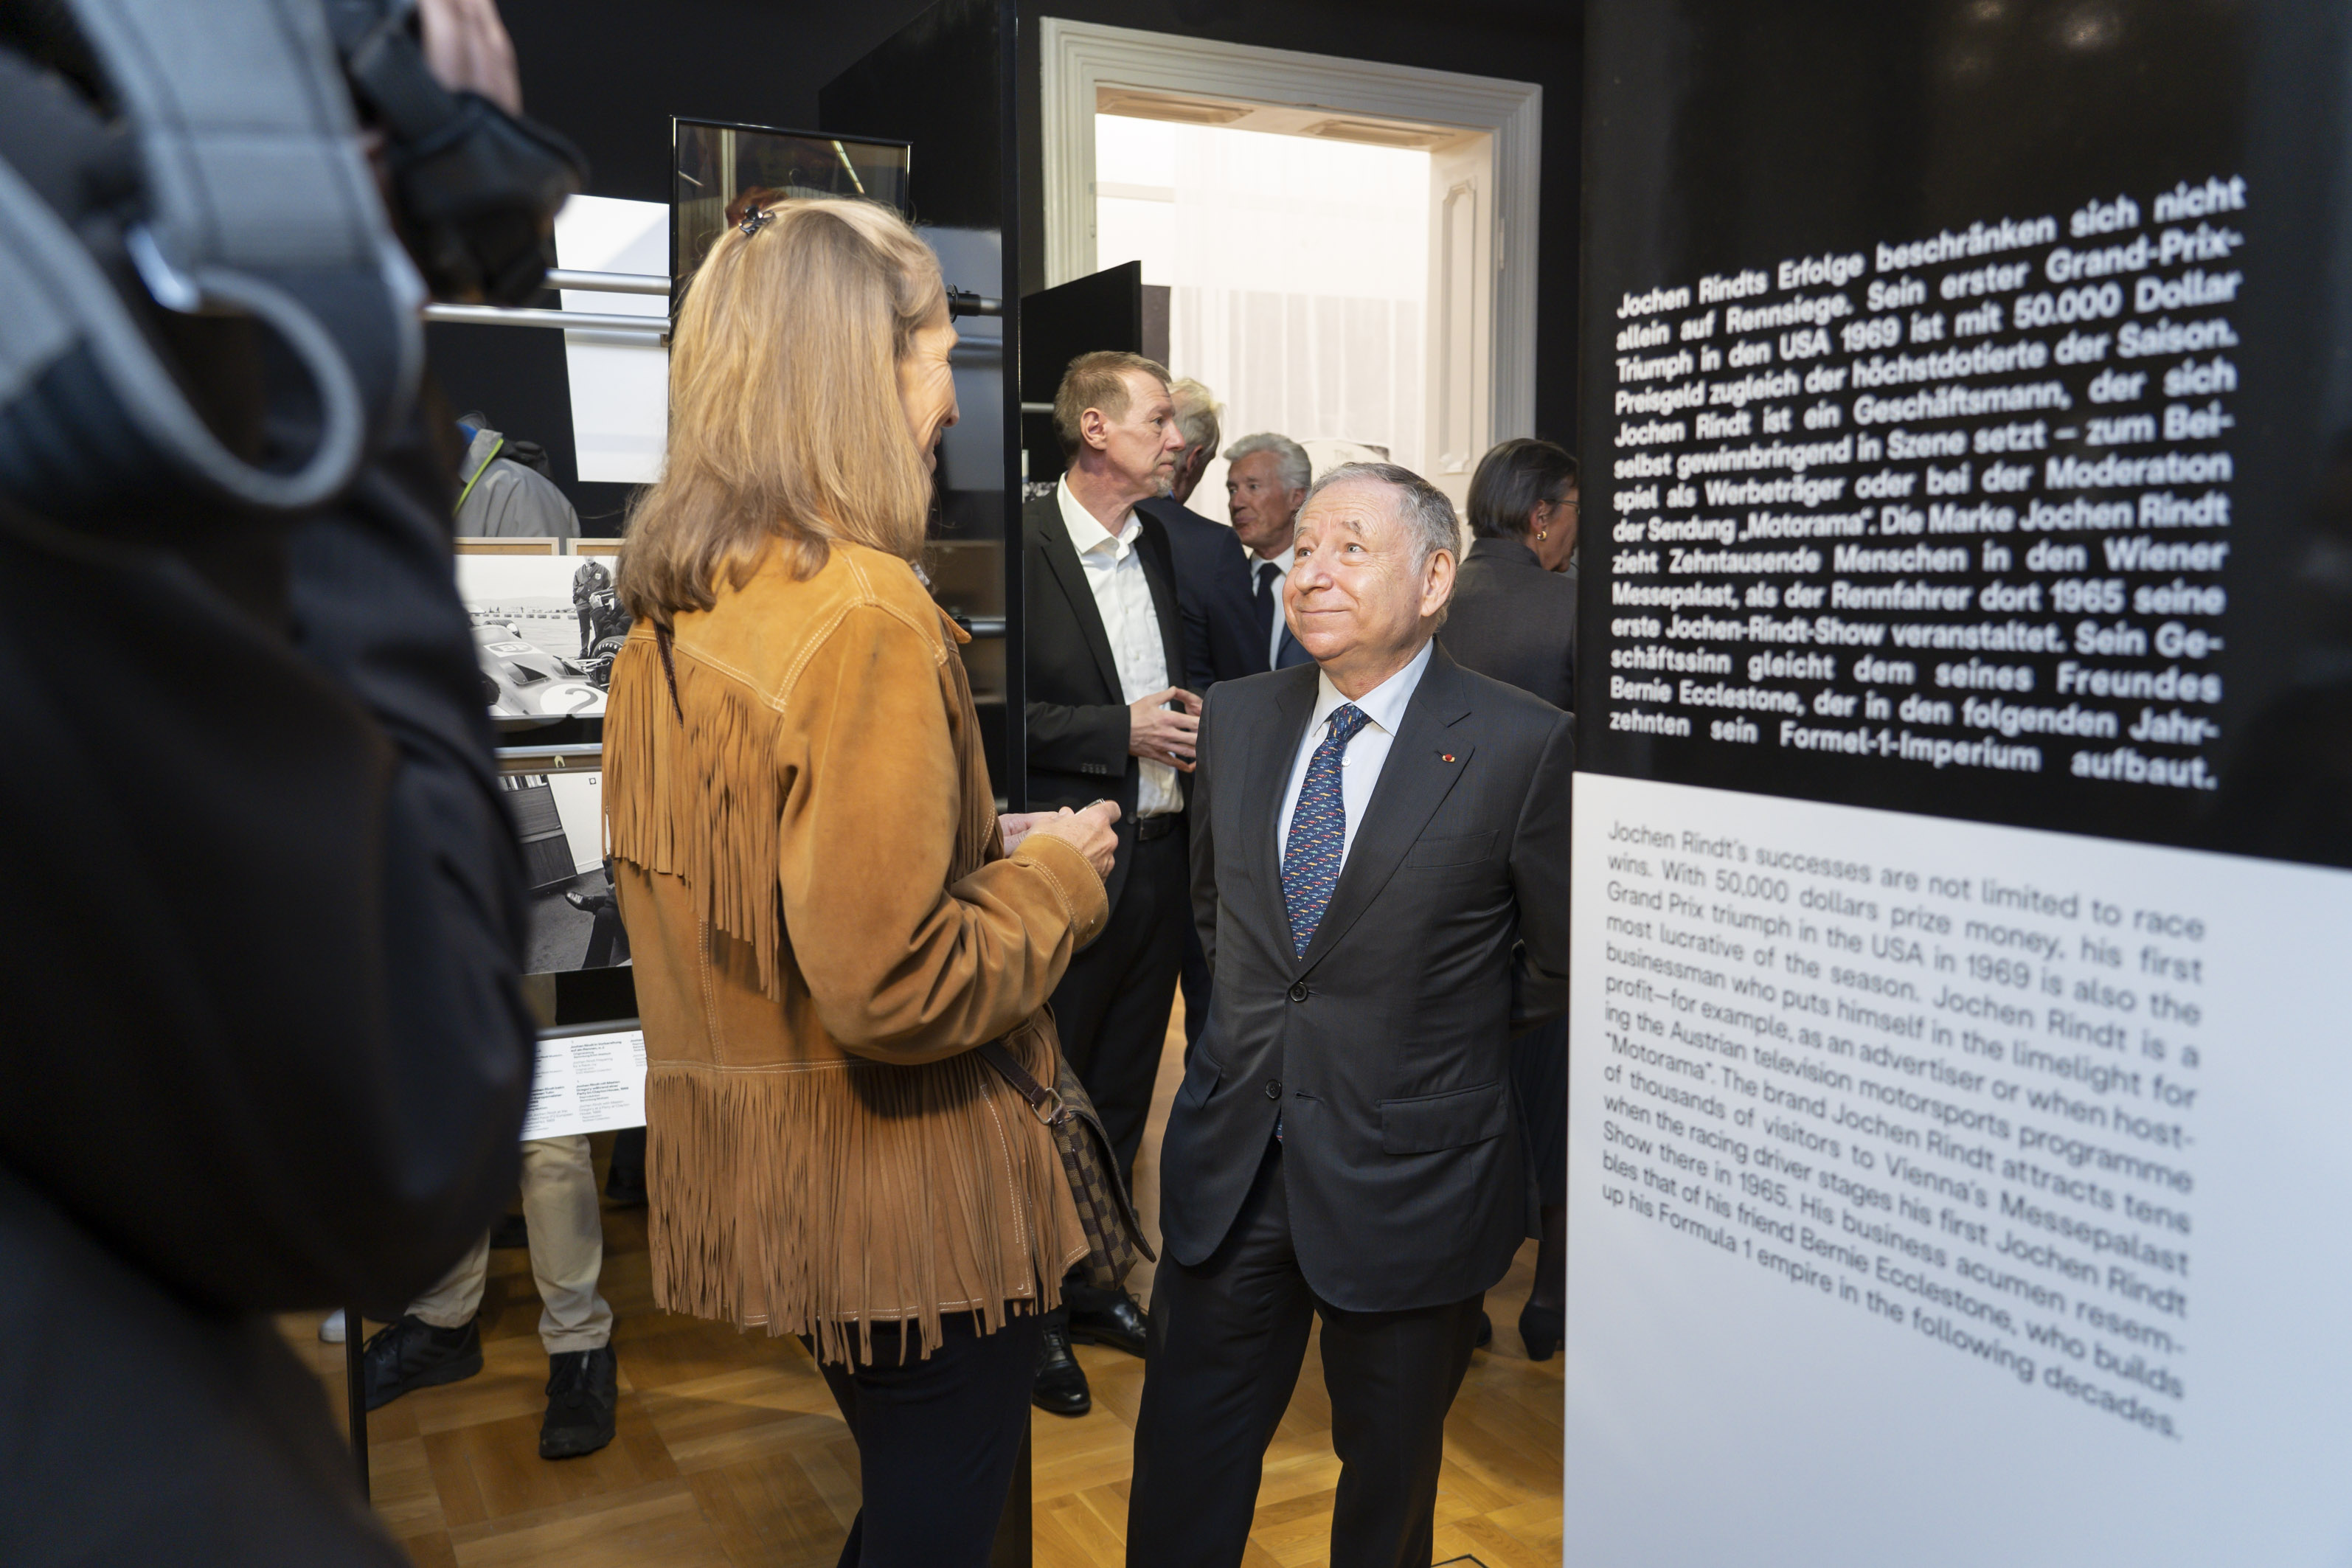 FIA Präsident Jean Todt tauscht sich mit Natascha Rindt über die Ausstellung aus